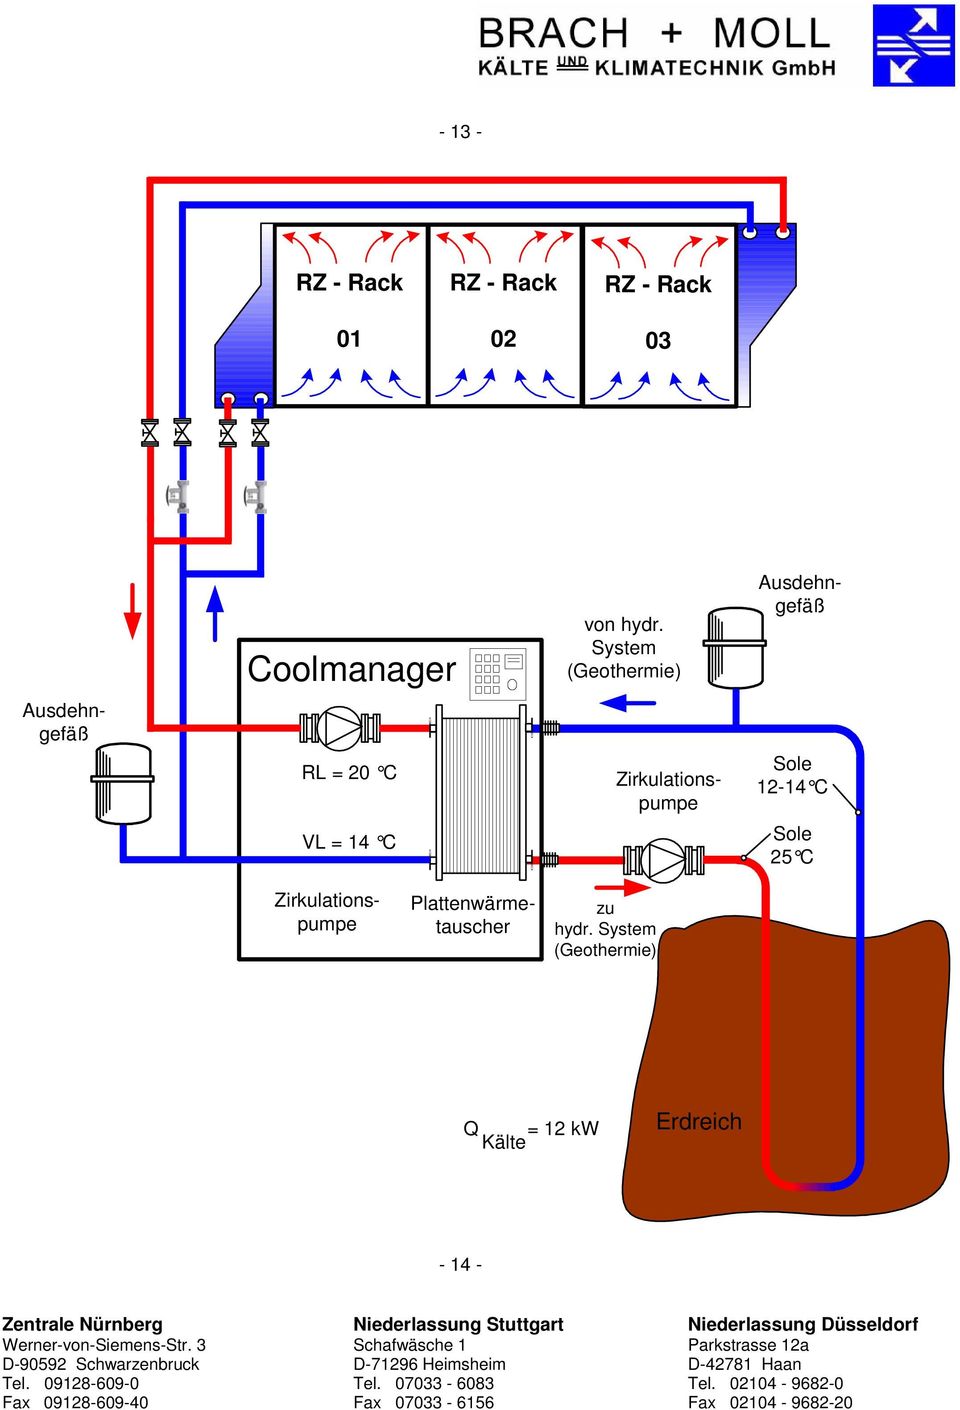 System (Geothermie) Ausdehngefäß Plattenwärmetauscher Sole 12-14 C